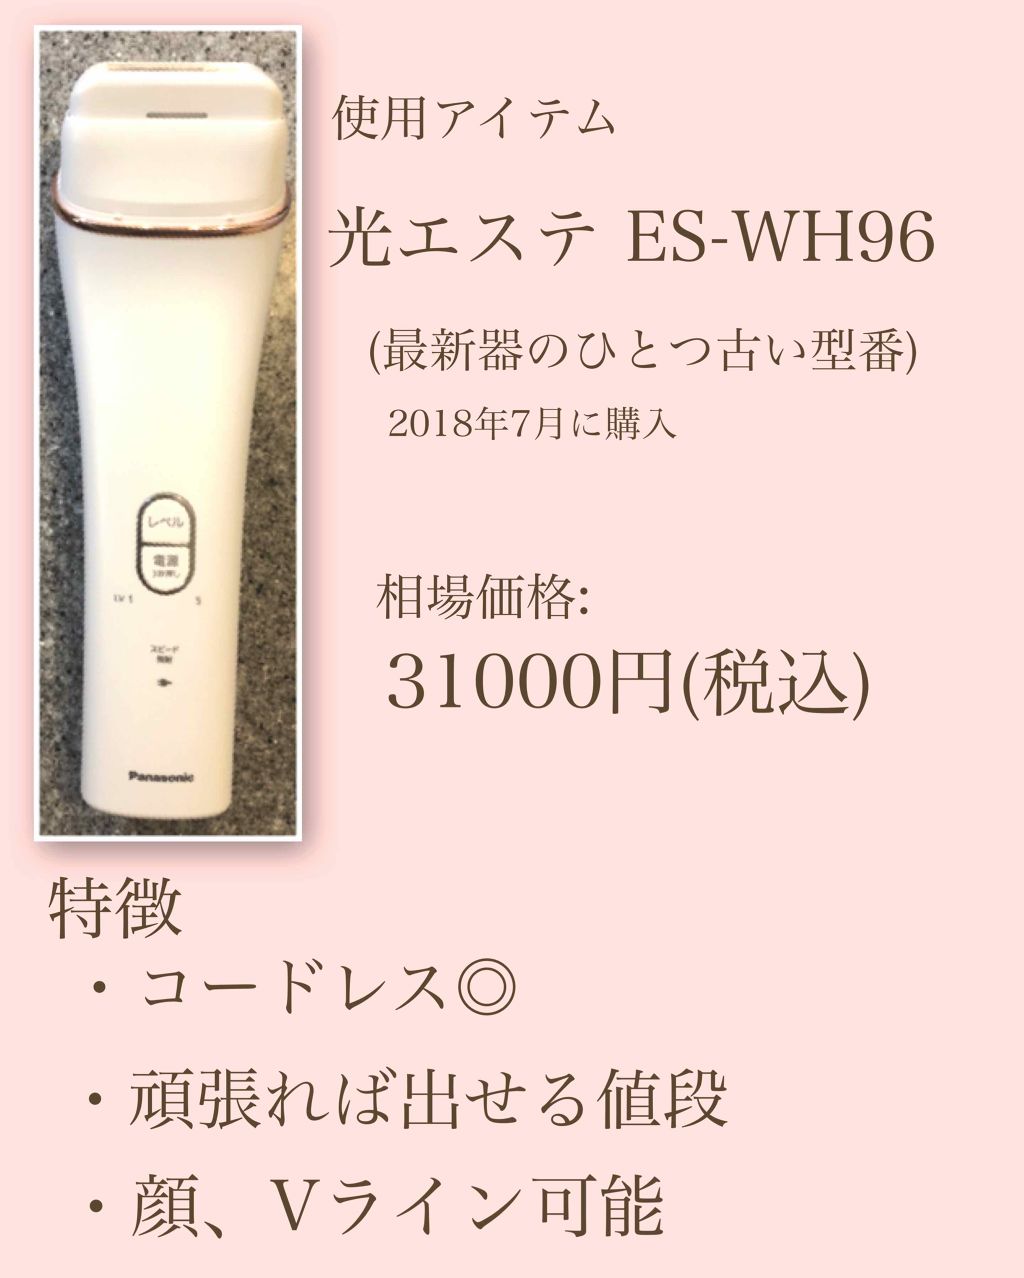 《新品未使用》 Panasonic 光エステ ES-WH96